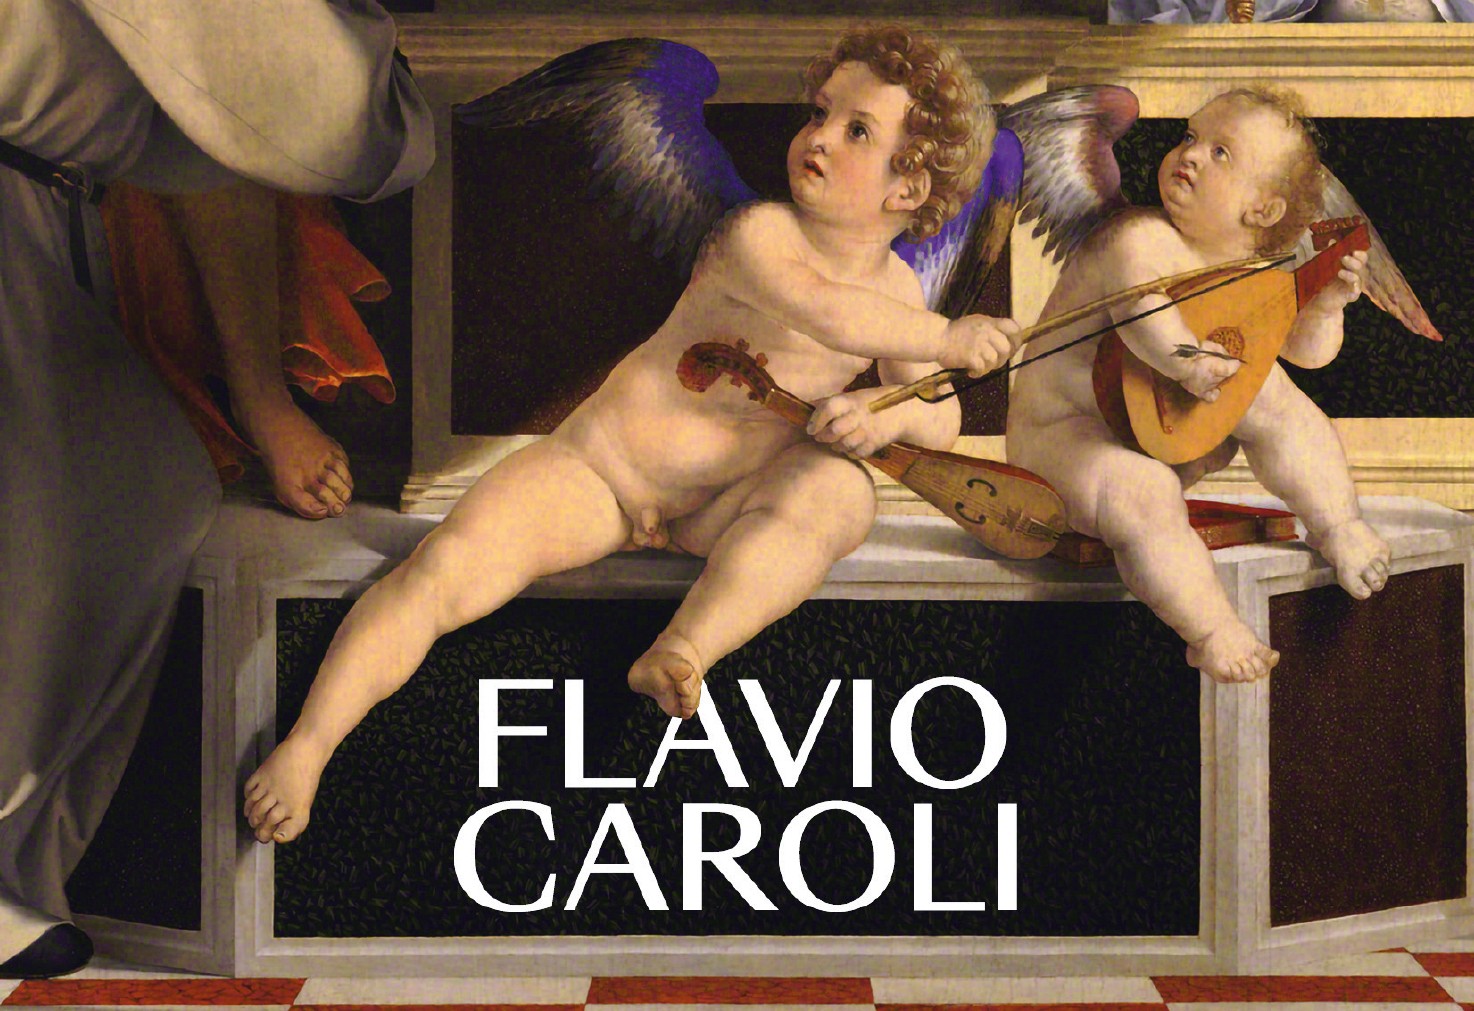 Flavio Caroli